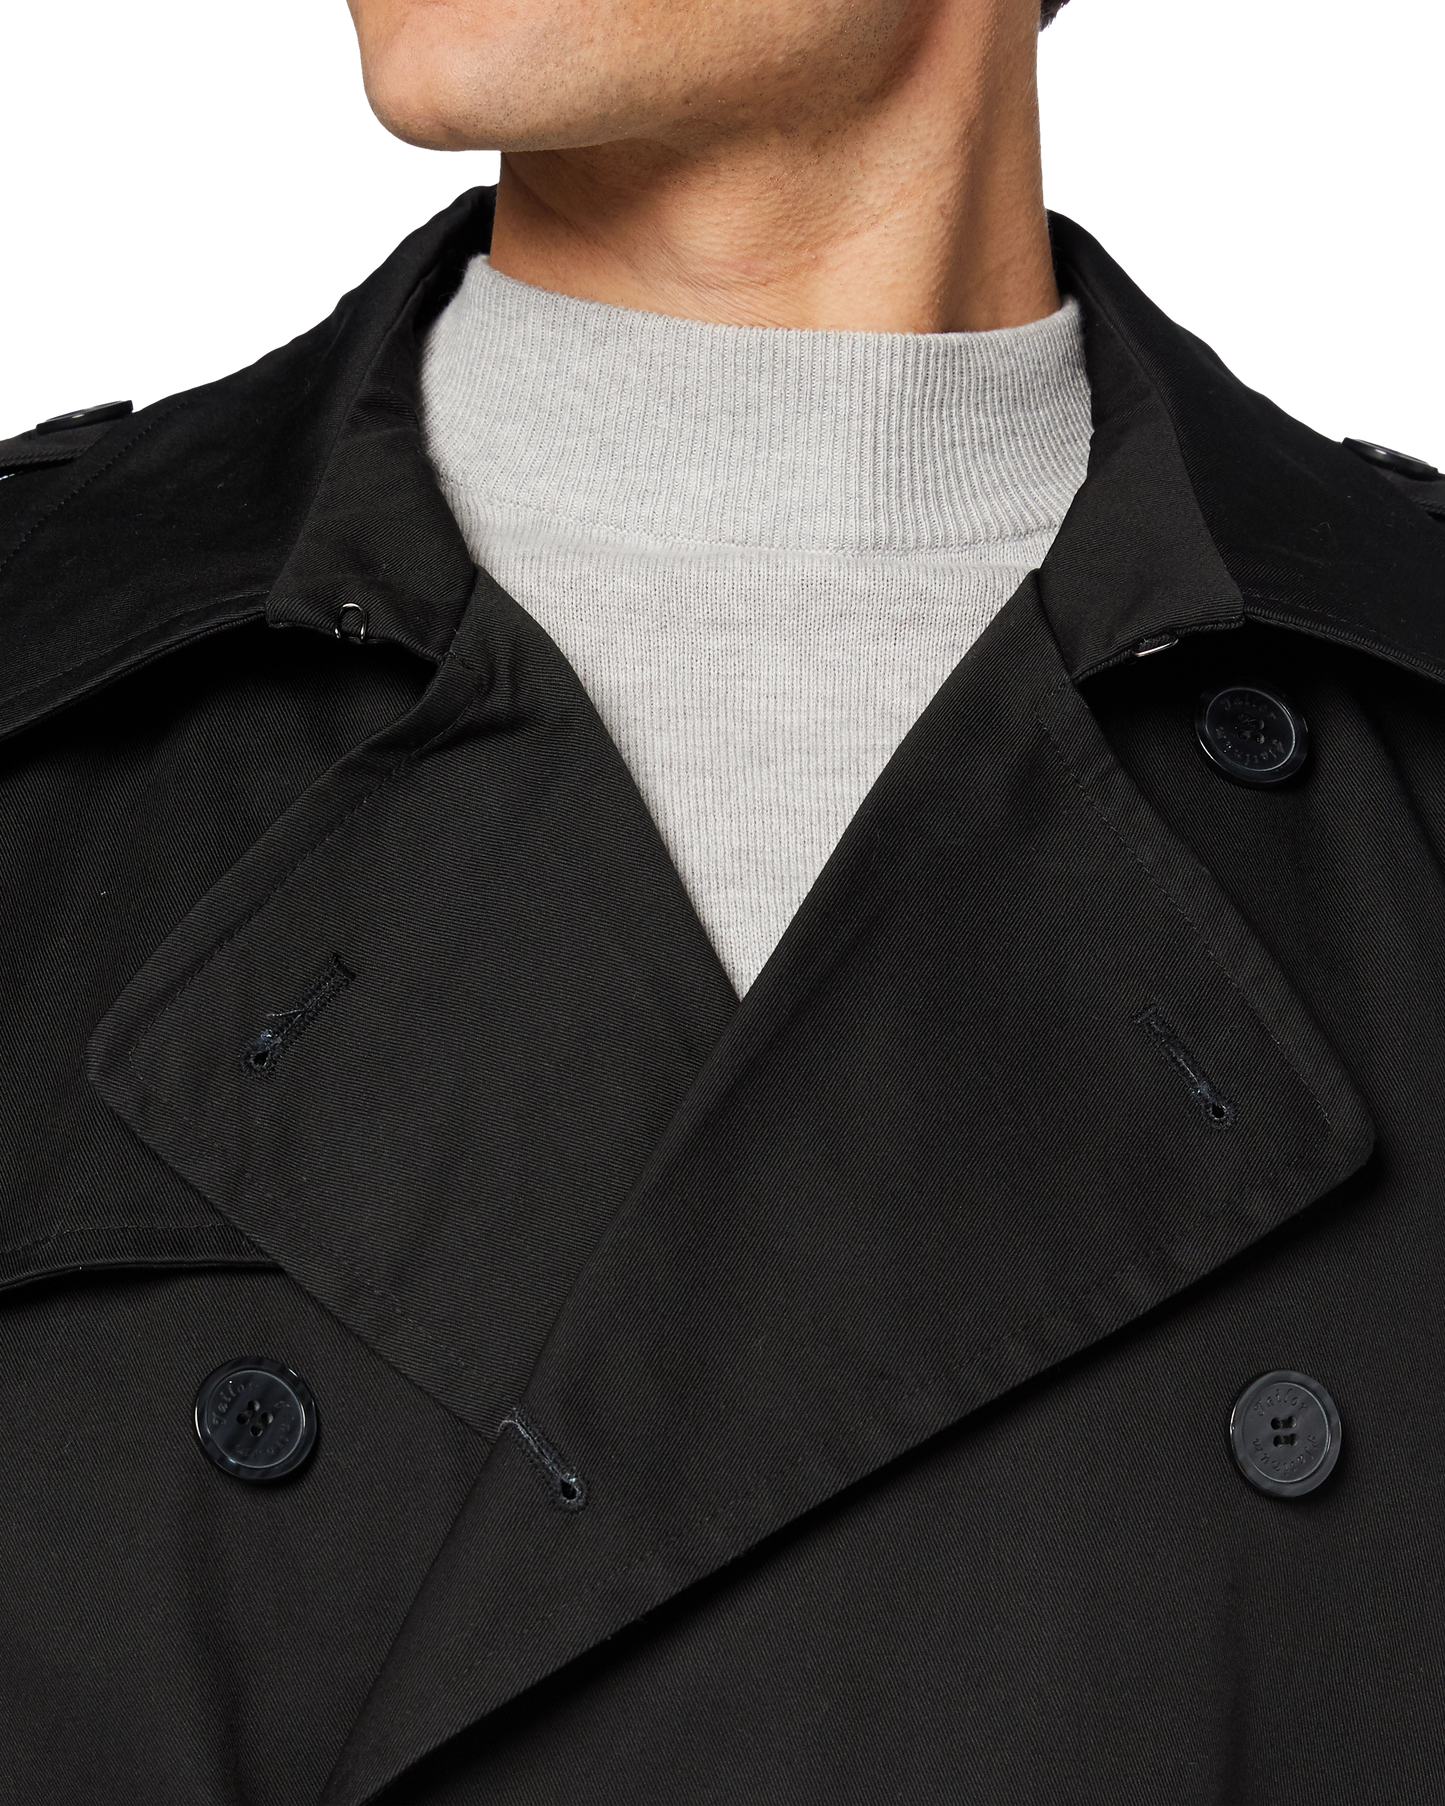 Trench-coat traditionnel noir à double boutonnage